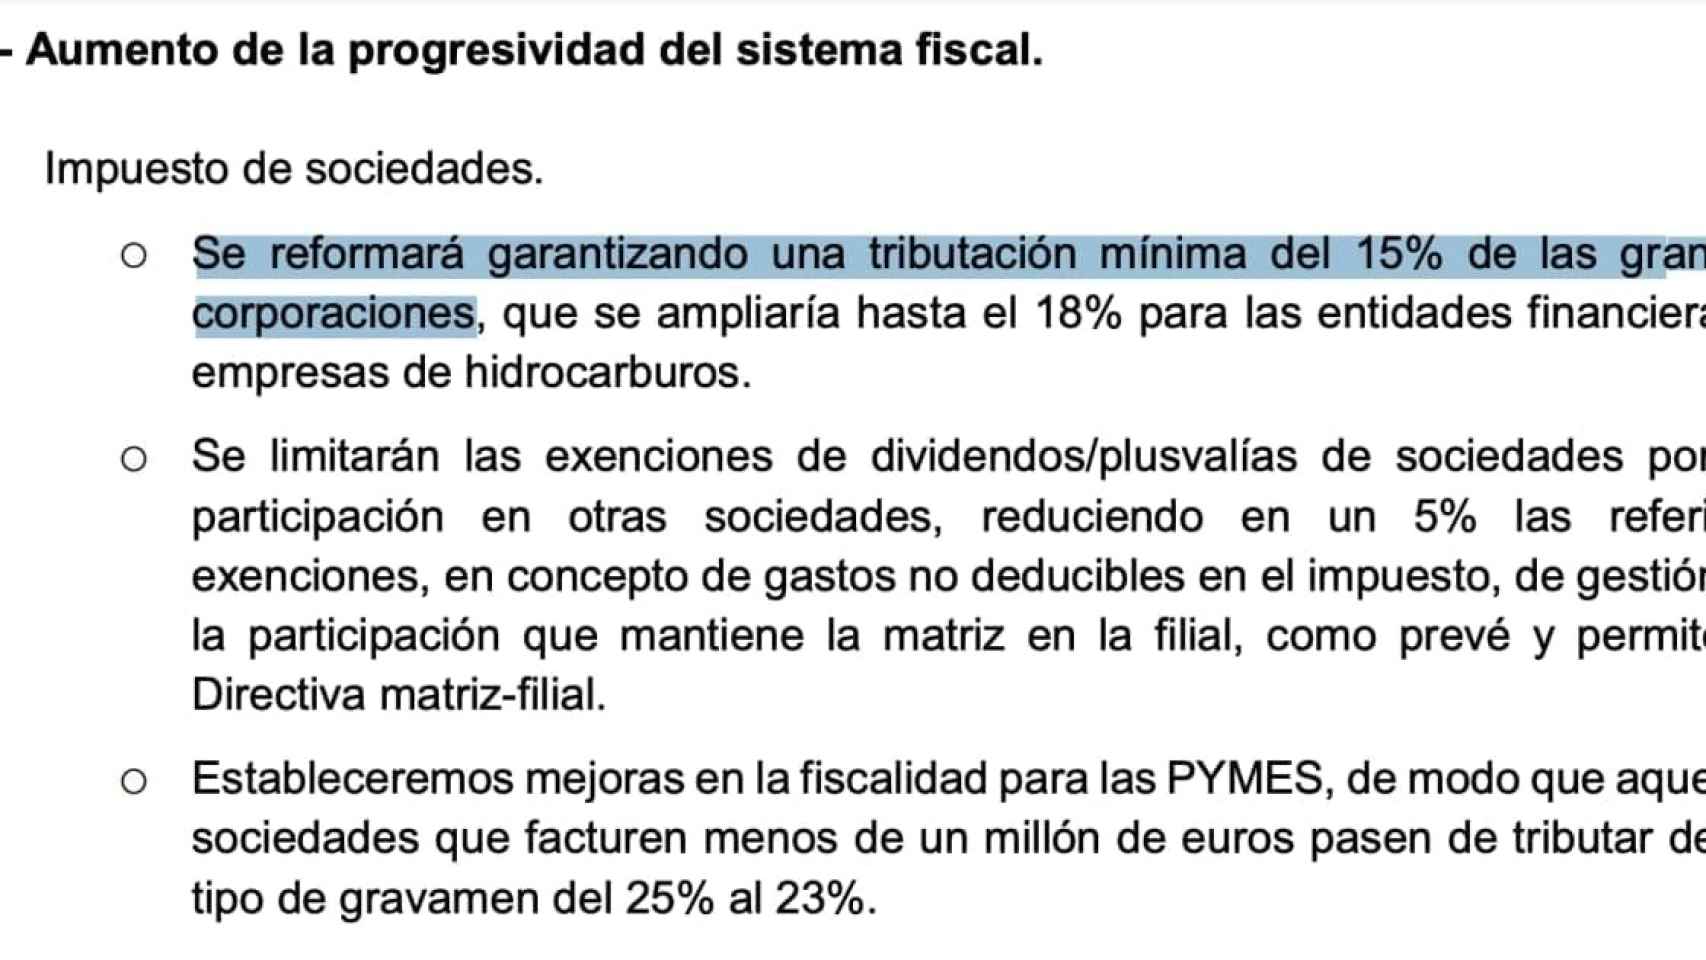 Extracto del capítulo fiscal en el programa de coalición entre PSOE y Unidas Podemos.